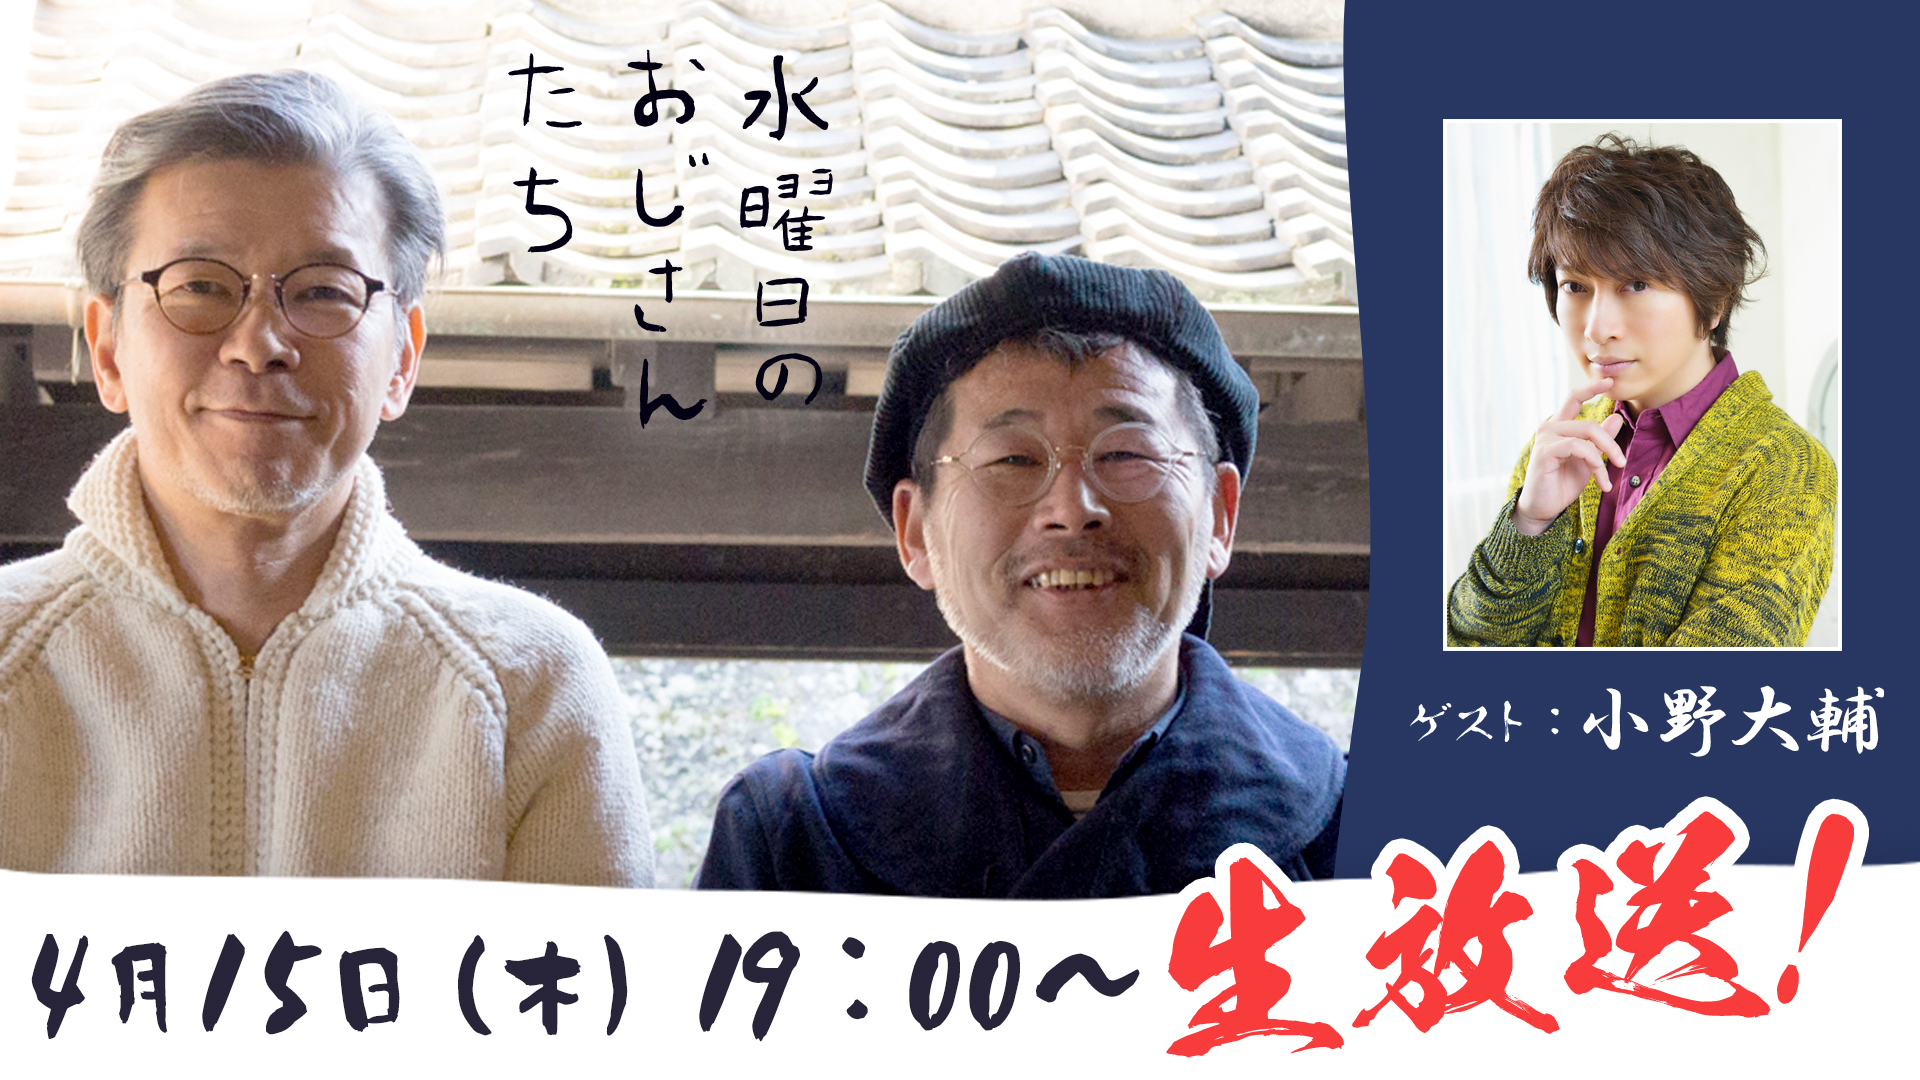 声優の小野大輔さんが登場 水曜どうでしょう 幹部のニコニコ チャンネル 水曜日のおじさんたち で4月15日 木 19 00 生放送決定 株式会社kadokawaのプレスリリース